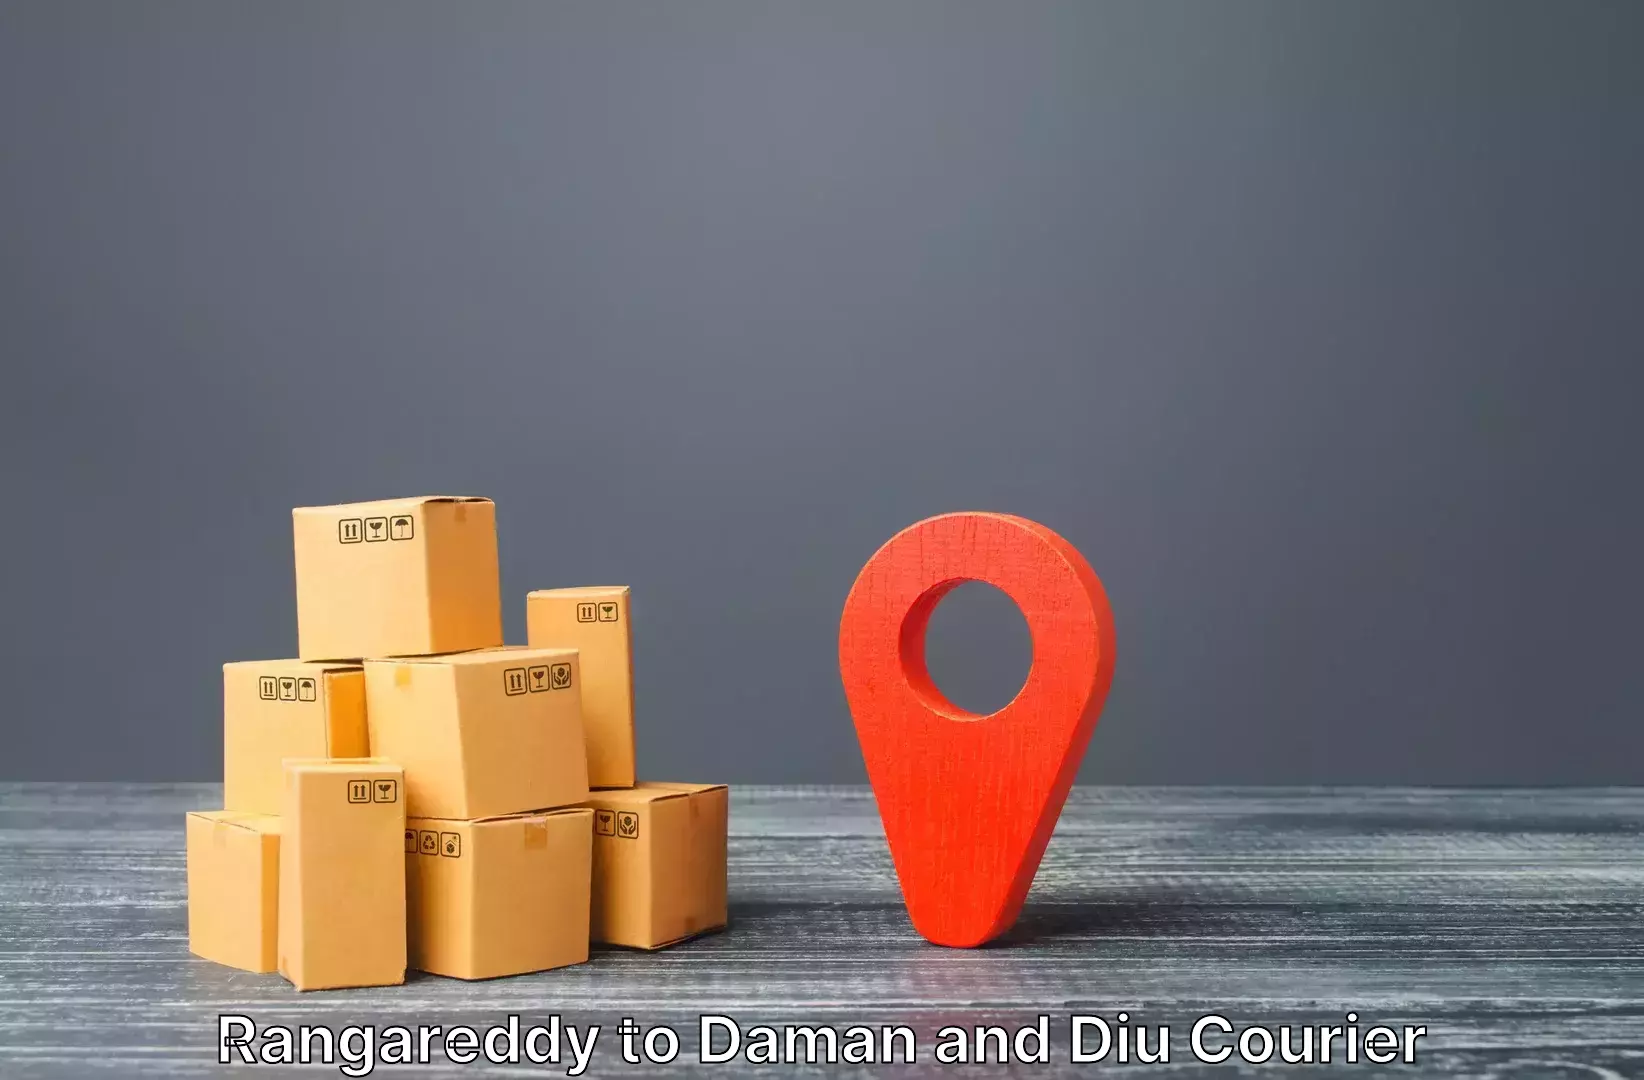 Luggage shipping estimate Rangareddy to Diu